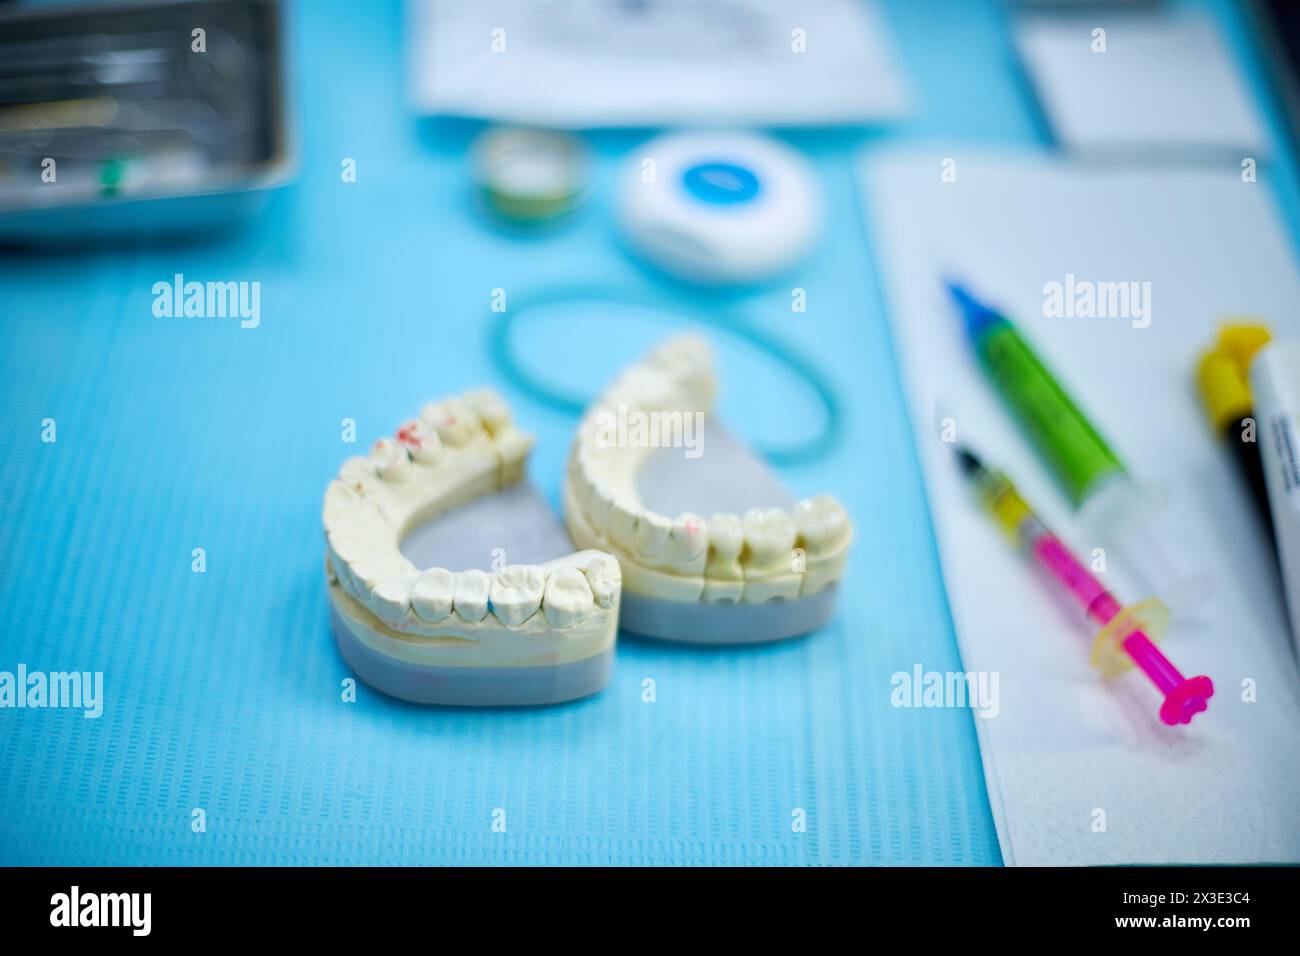 Mâchoires artificielles sur table en cabinet dentaire, focus sur la mâchoire gauche. Banque D'Images